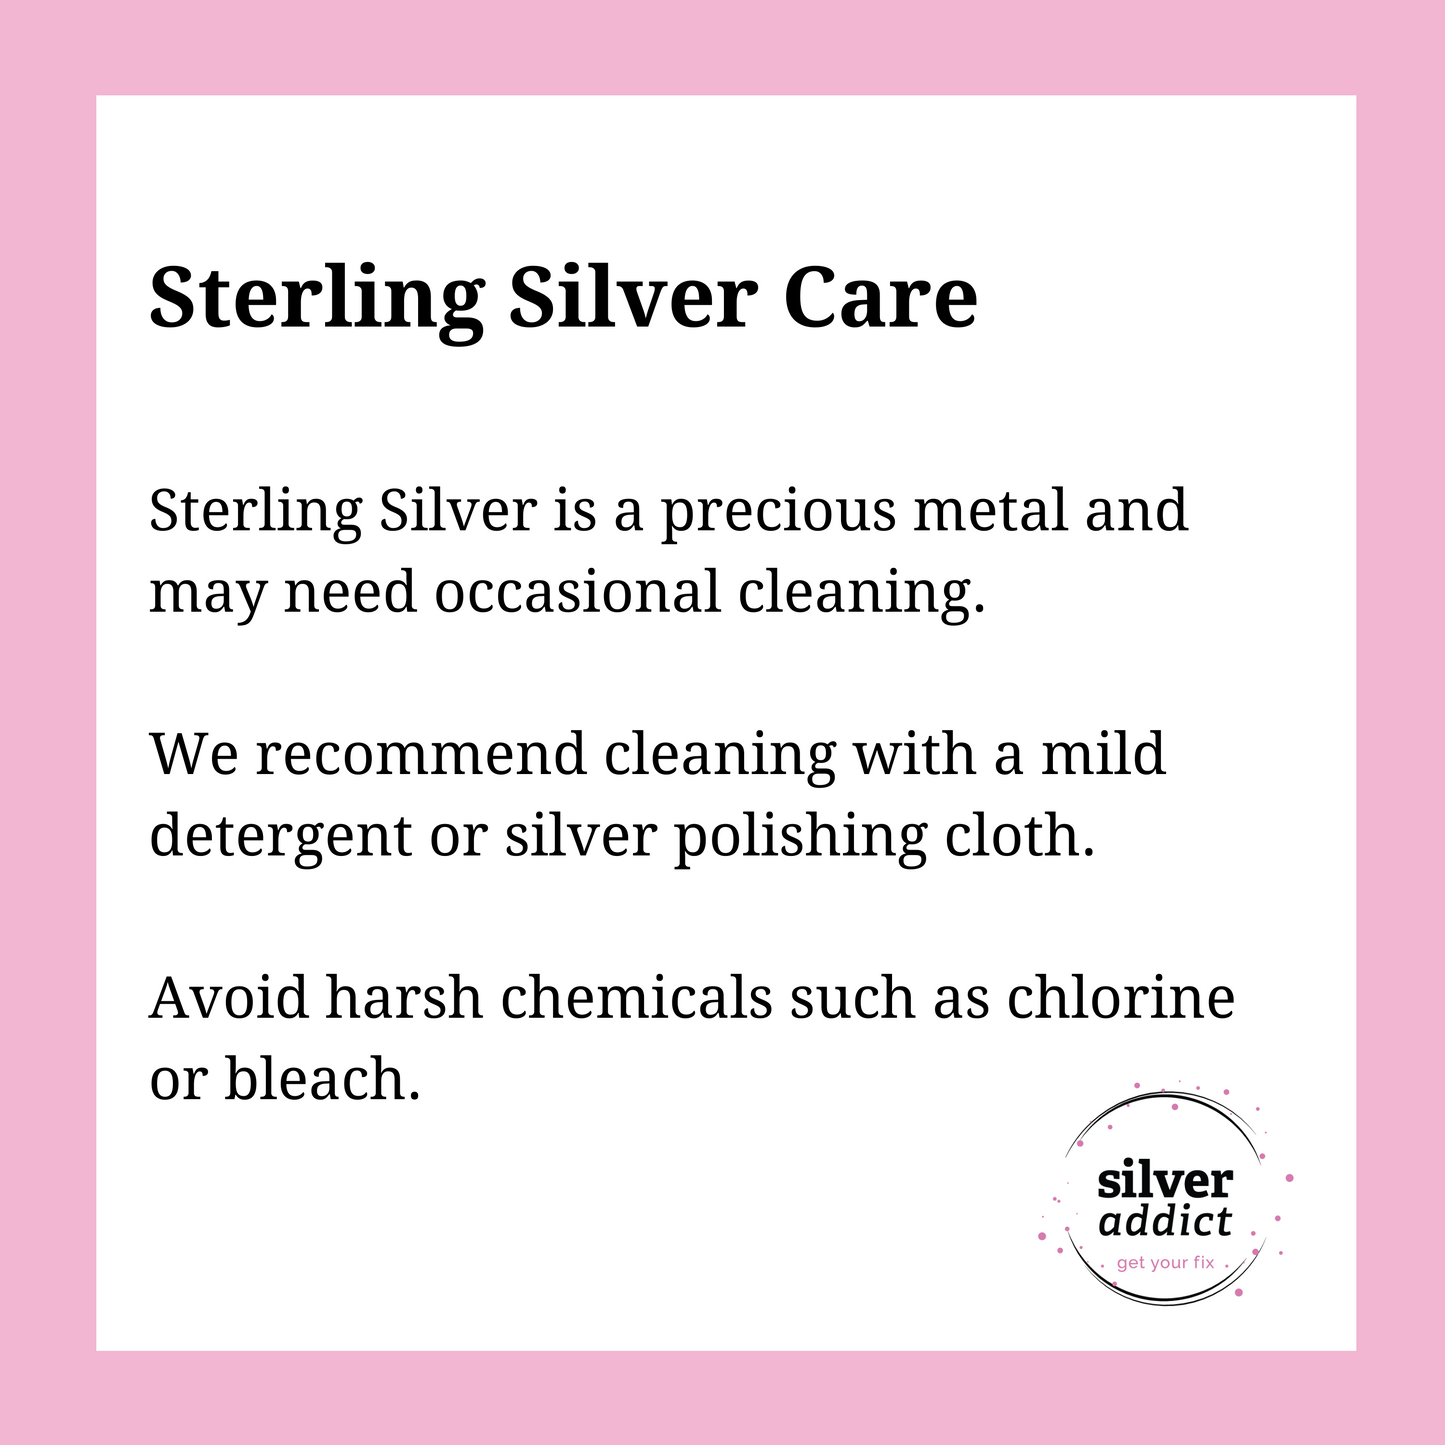 Sterling Silver Starburst Stud Earrings